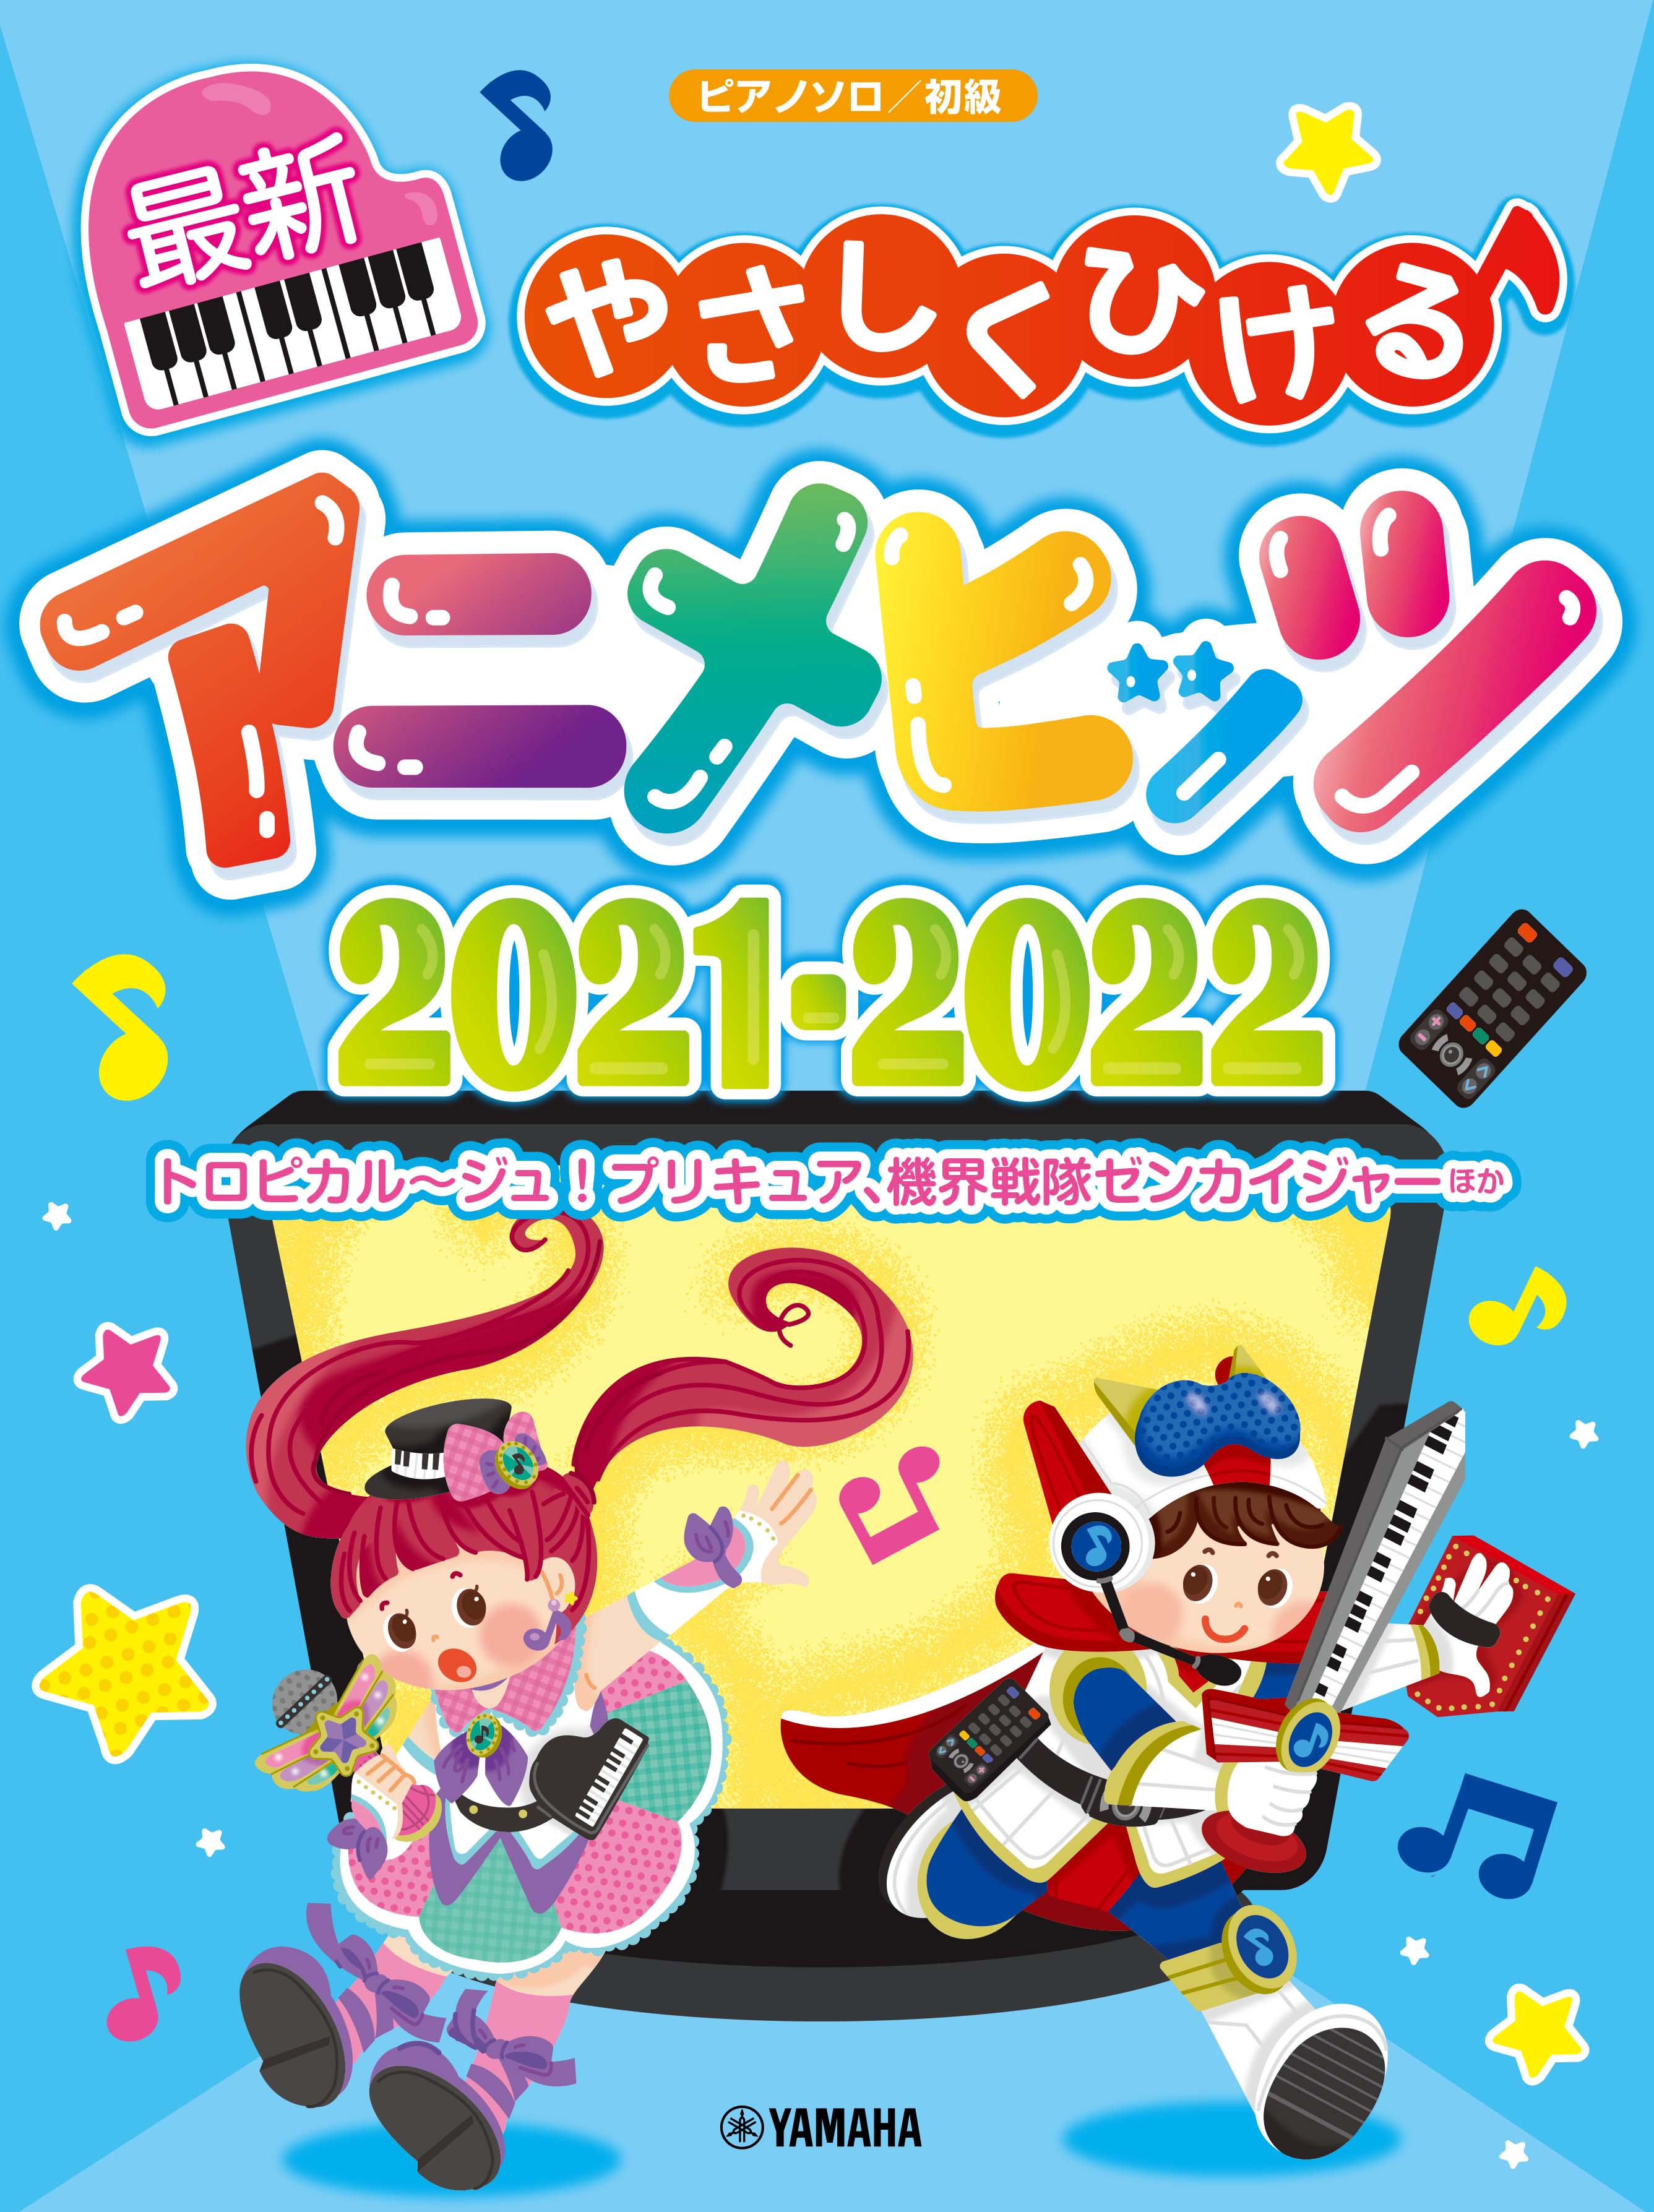 ピアノソロ やさしくひける最新アニメヒッツ21 22 6月25日発売 Sankeibiz サンケイビズ 自分を磨く経済情報サイト